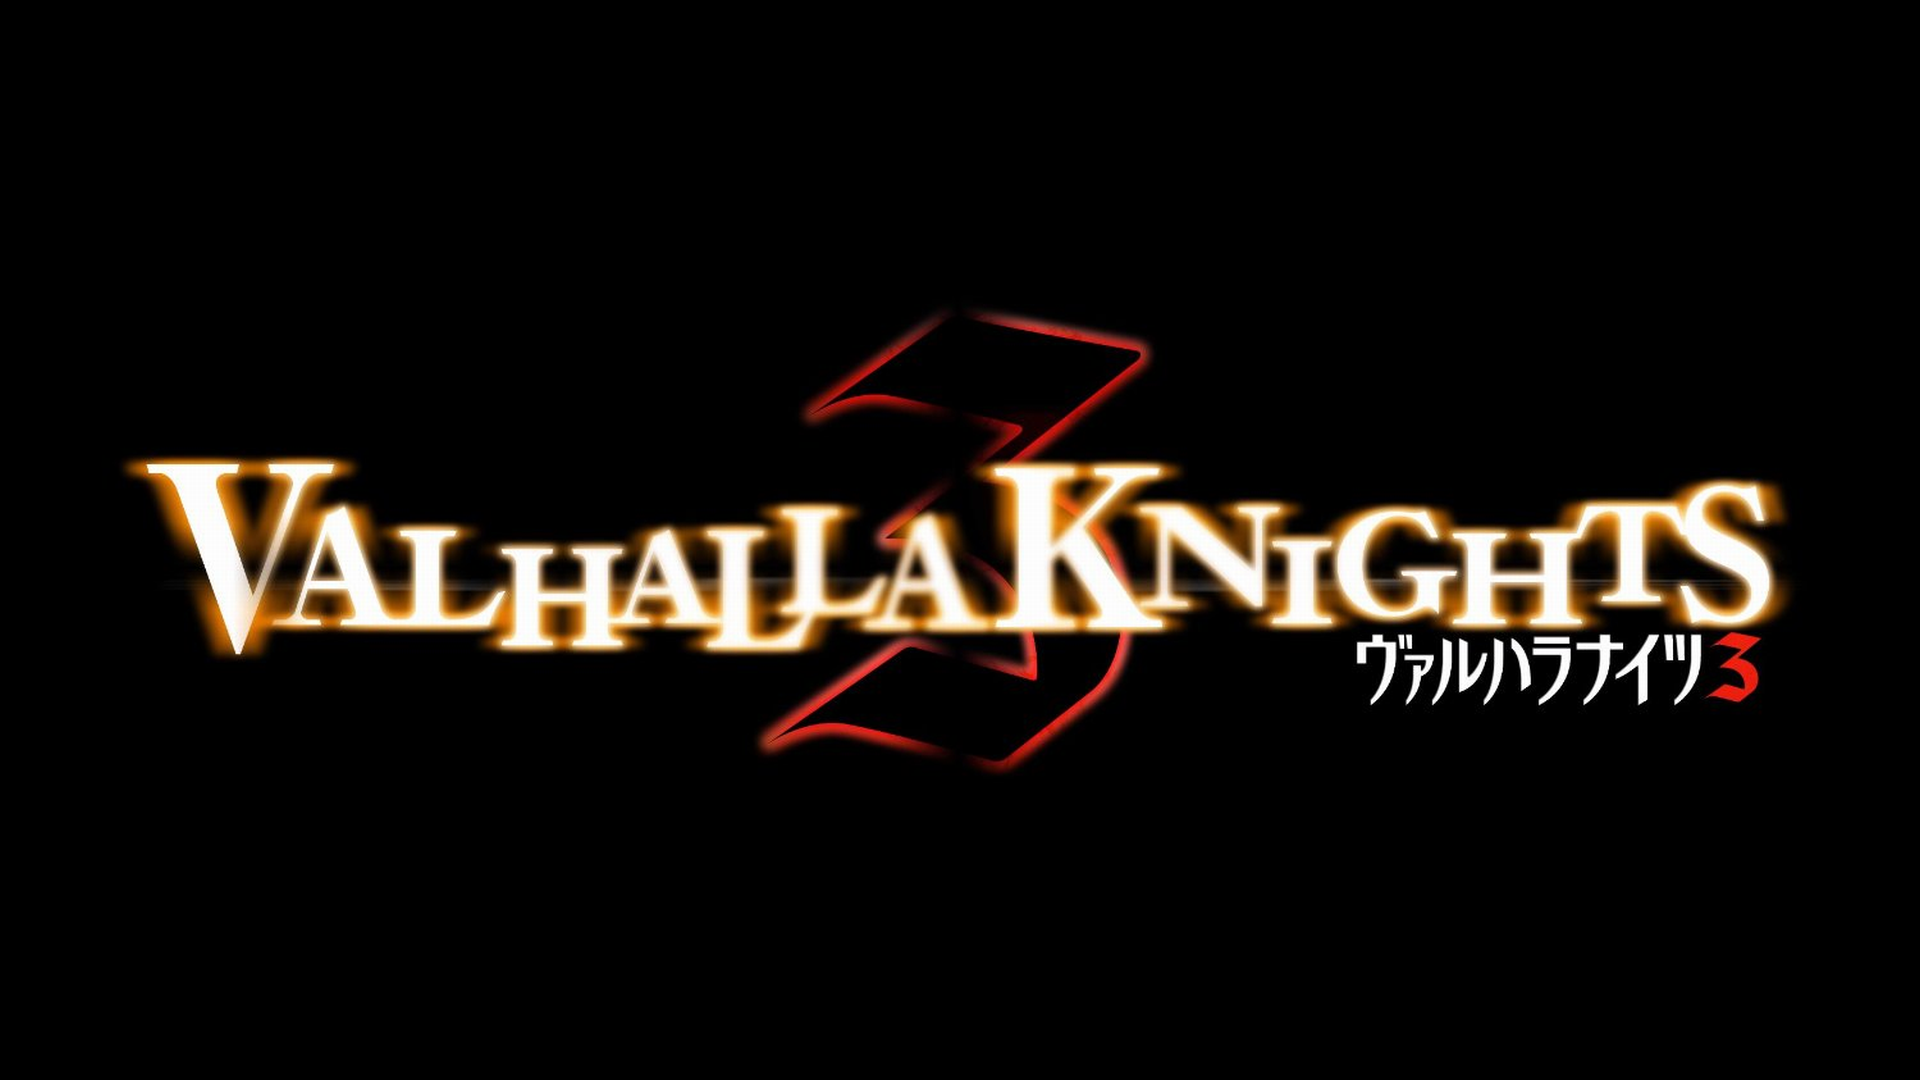 Valhalla Knights 3 Logo